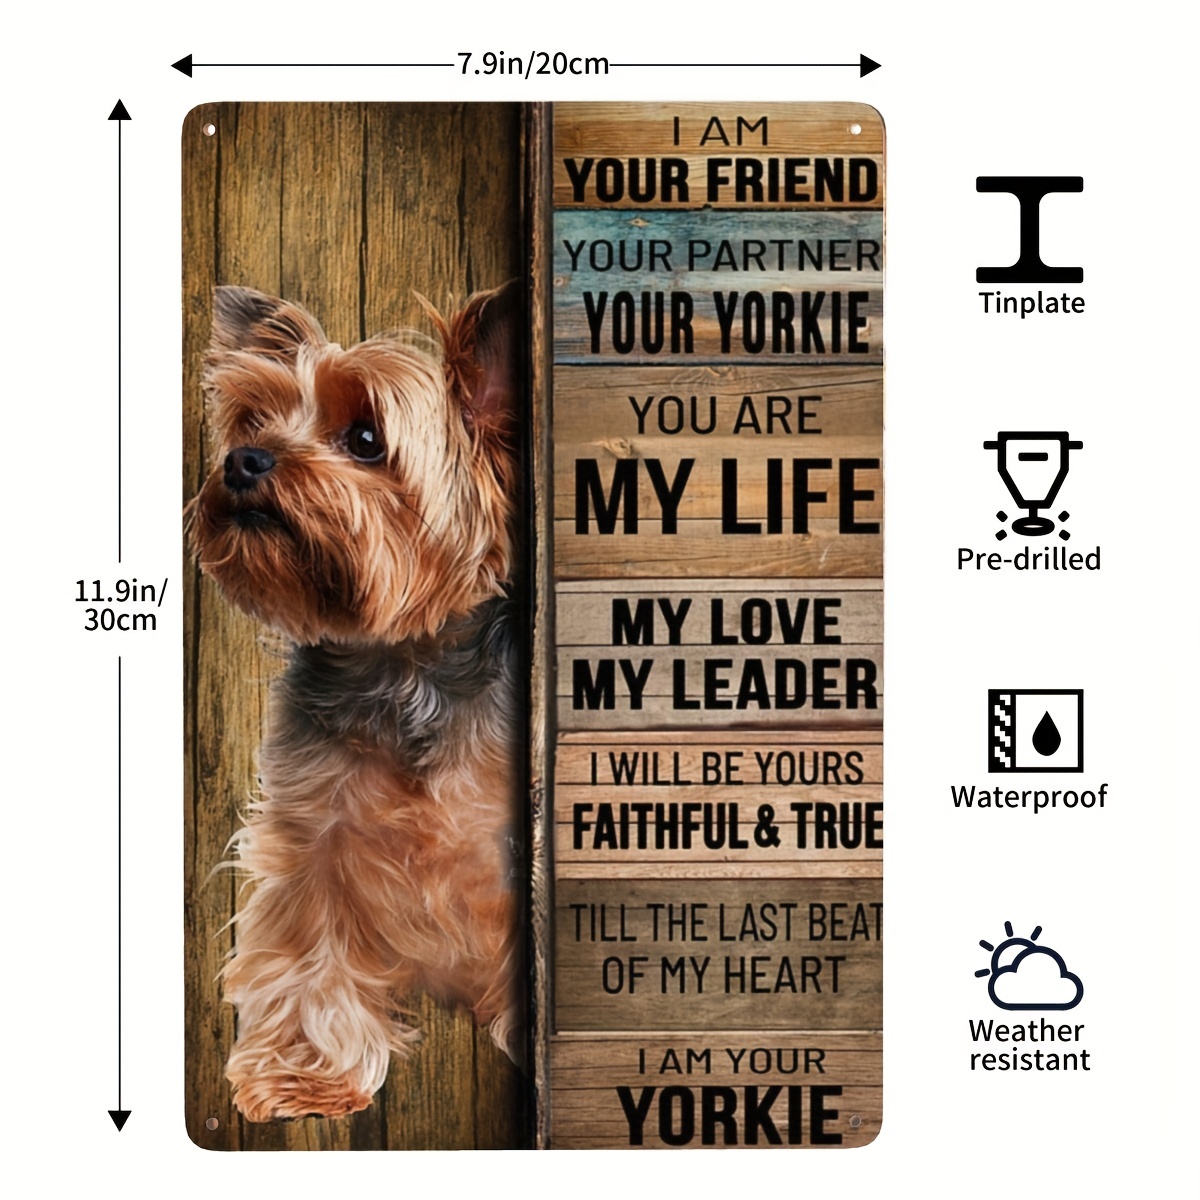 2Pcs Acrylic Yorkshire Terrier Dog Key Chains Yorkie Keychain Women Girl  Handbag Charms Jewelry